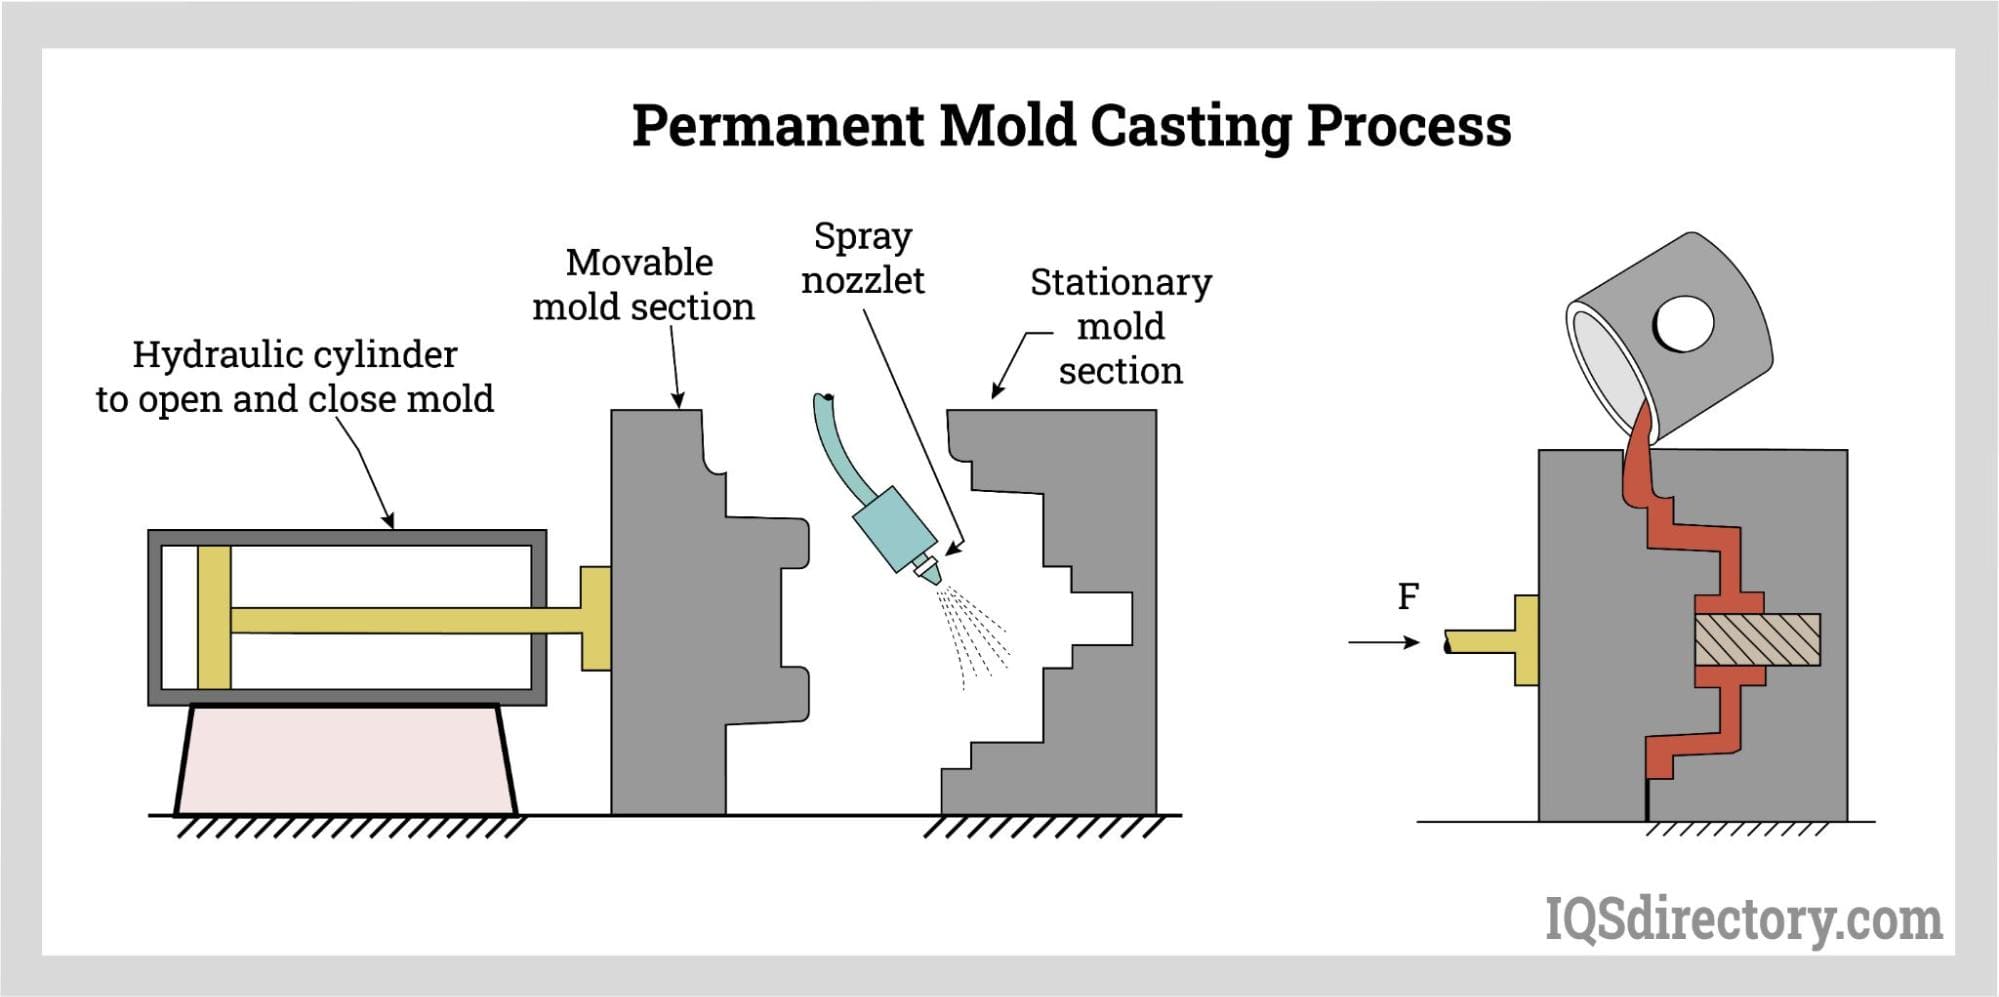 Permanent Mold Casting Process